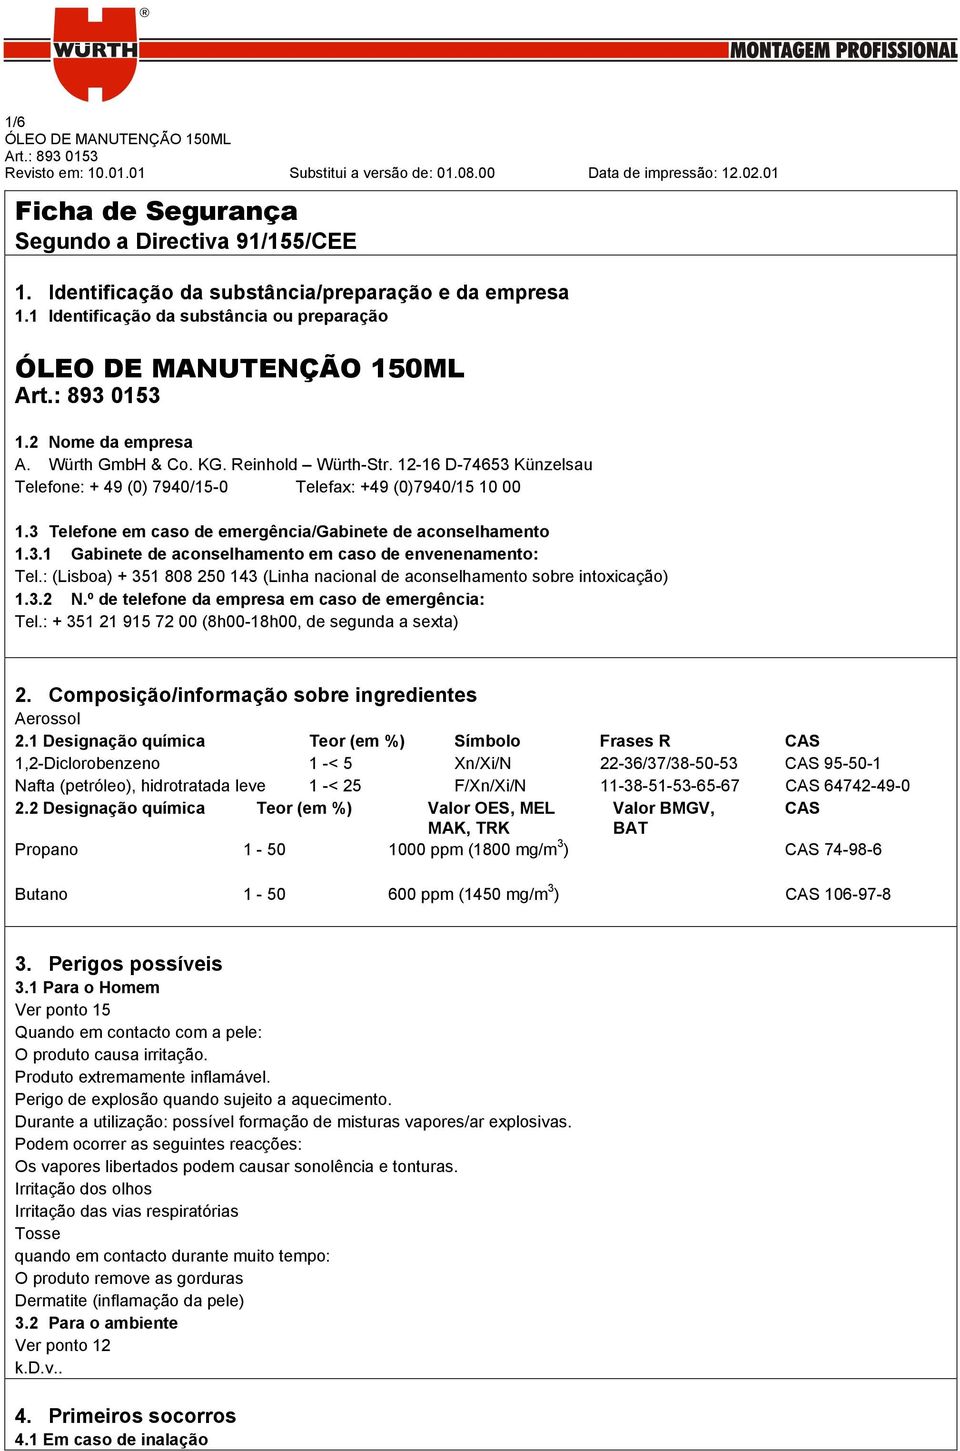 : (Lisboa) + 351 808 250 143 (Linha nacional de aconselhamento sobre intoxicação) 1.3.2 N.º de telefone da empresa em caso de emergência: Tel.: + 351 21 915 72 00 (8h00-18h00, de segunda a sexta) 2.